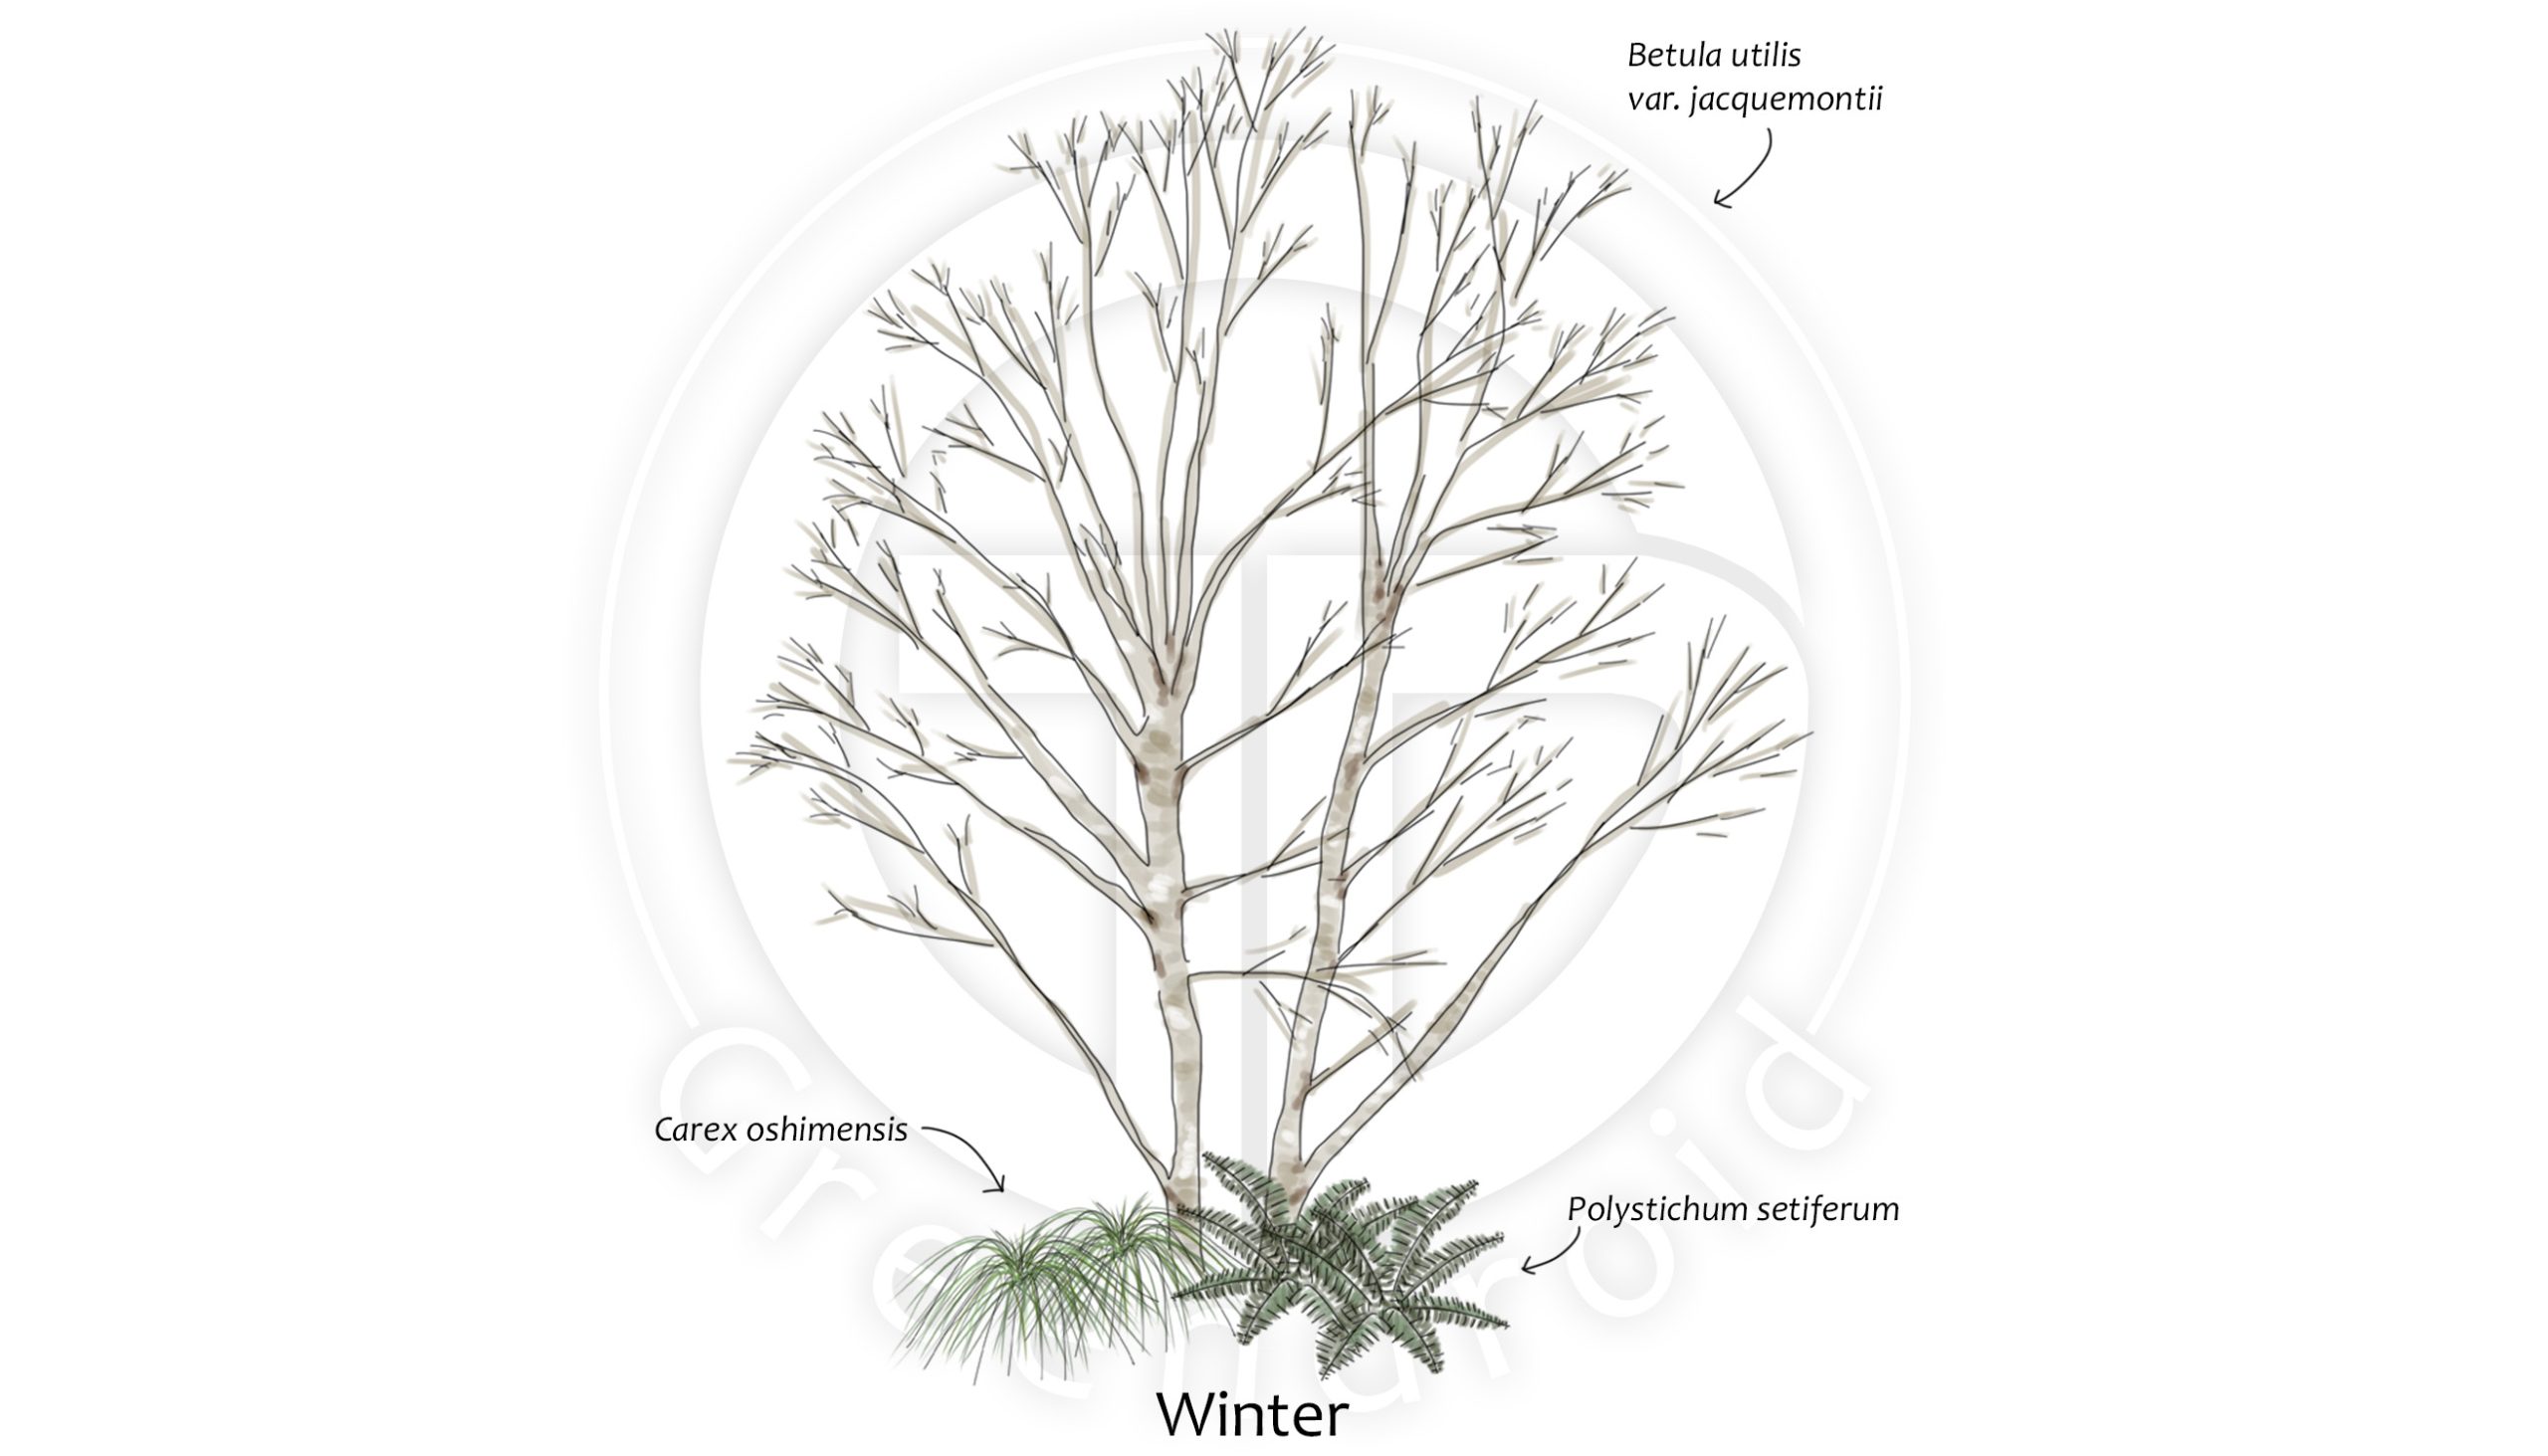 Betula, Carex und Polystichum im Winter